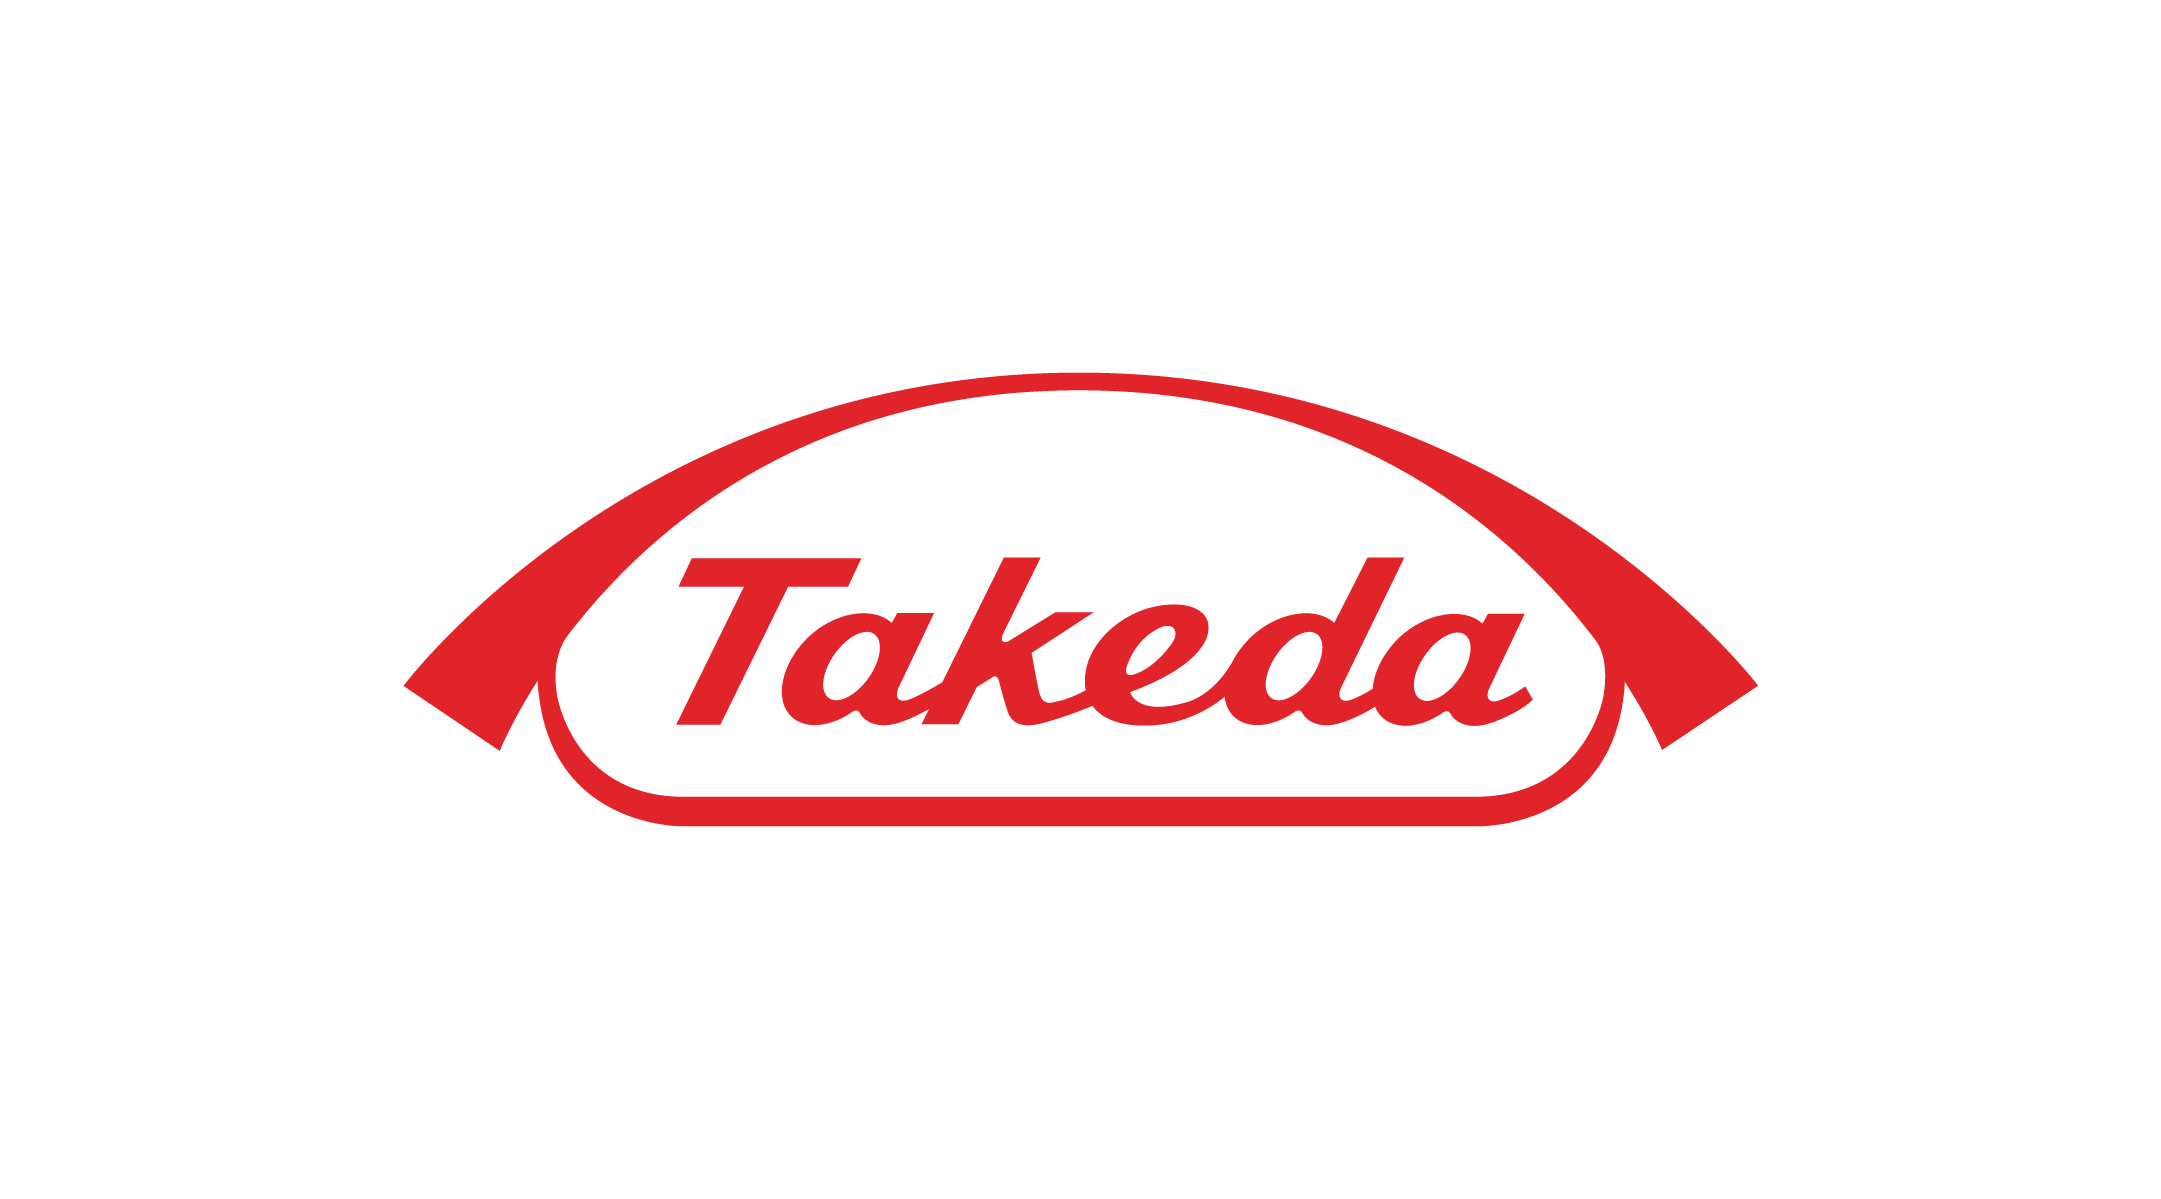 Dakiyama_2021_Takeda_Red_DIGITAL_USE.png